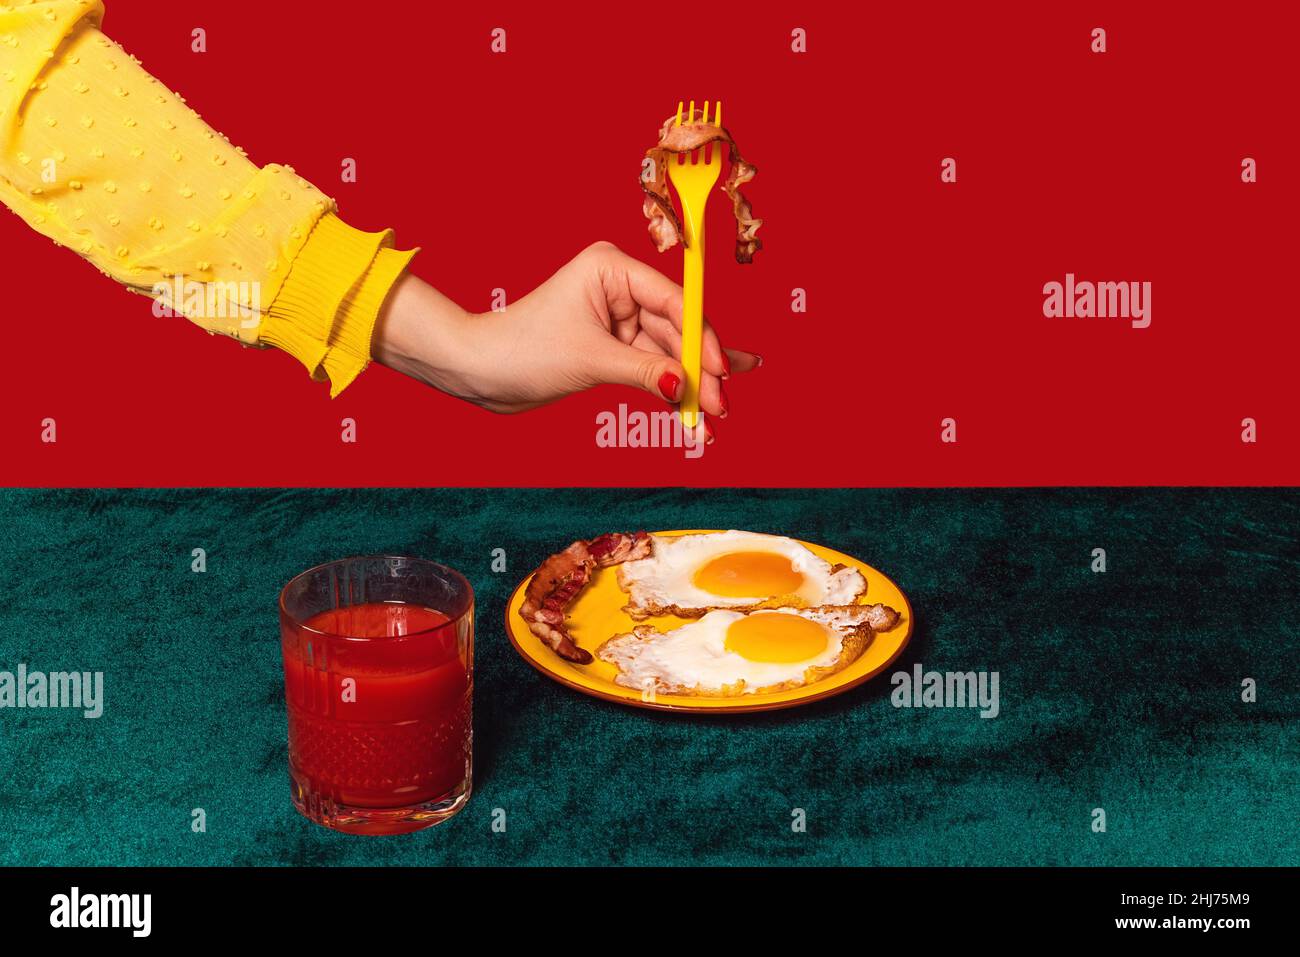 La mano umana degusta pancetta e uova isolate su sfondo verde e rosso. Interni vintage in stile retrò. Cibo pop arte fotografia. Foto Stock